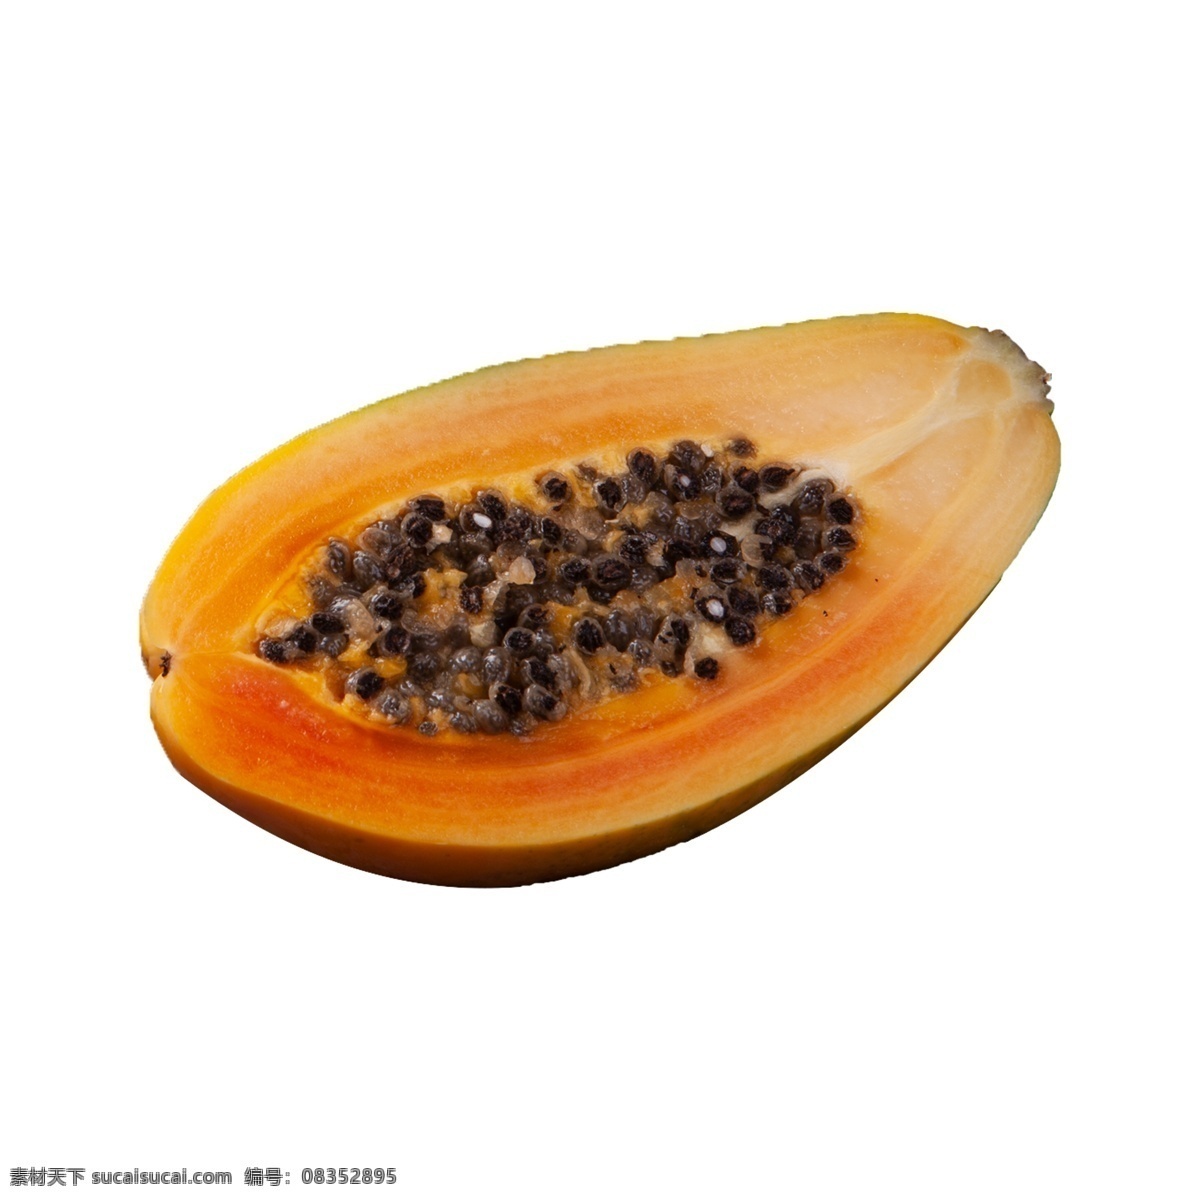 半 新鲜 木瓜 半个木瓜 水果籽 水果 营养 黑色籽 水果肉 维生素 植物 食物 美味